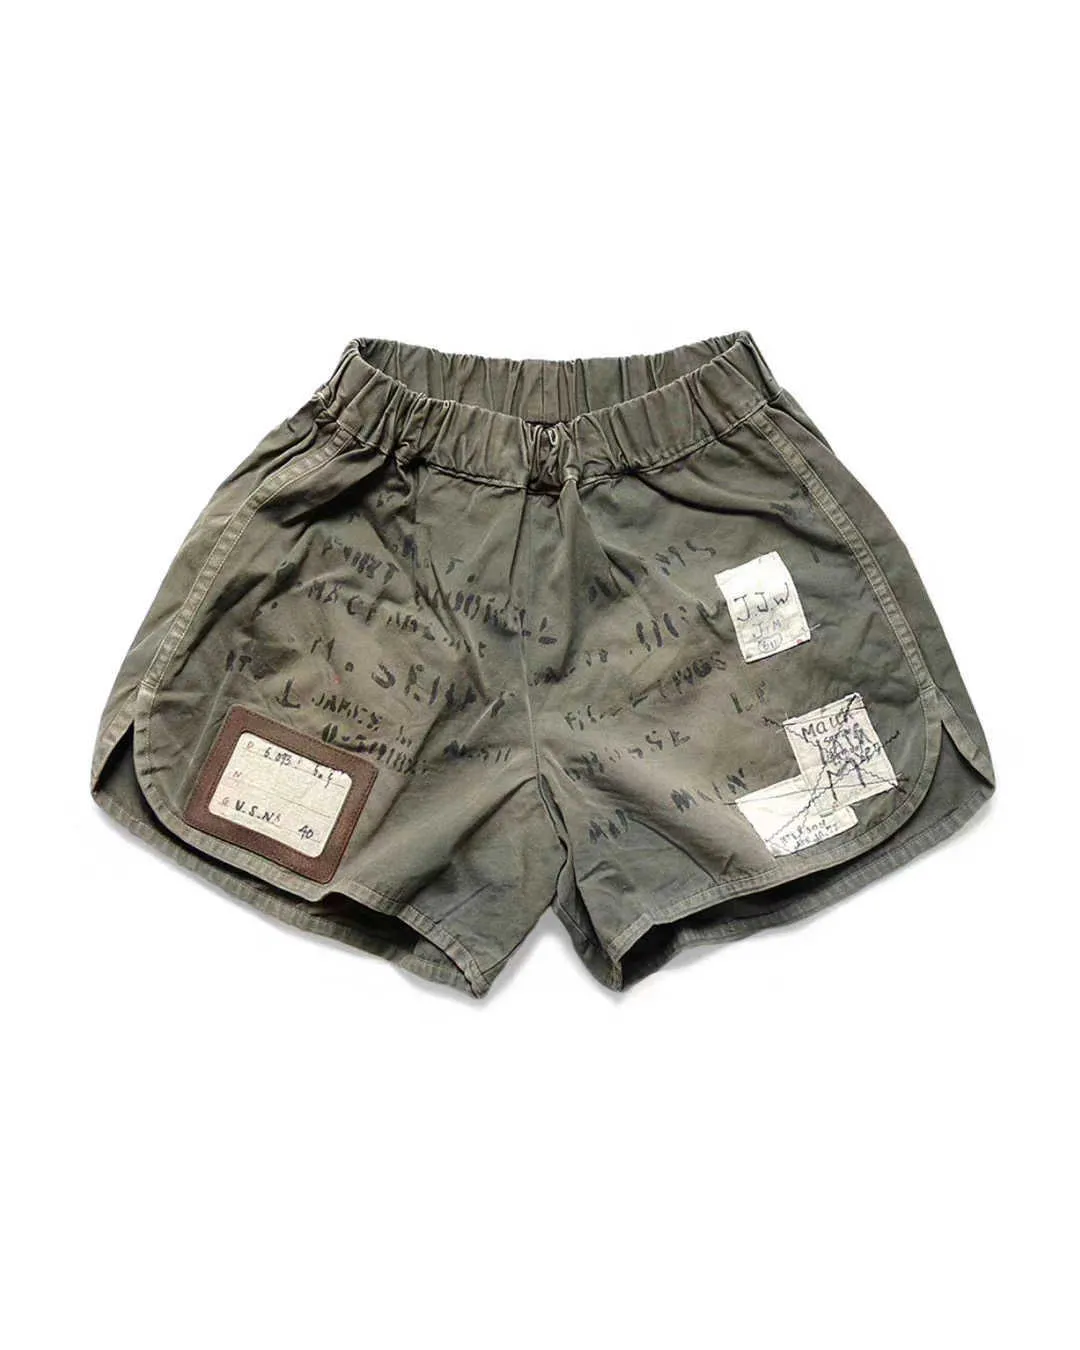 Herrenshorts 20er Jahre Kapital Hirata Kahiro Letter Worn elastische Taille neu gewaschen lässige Shorts Boxerhosen